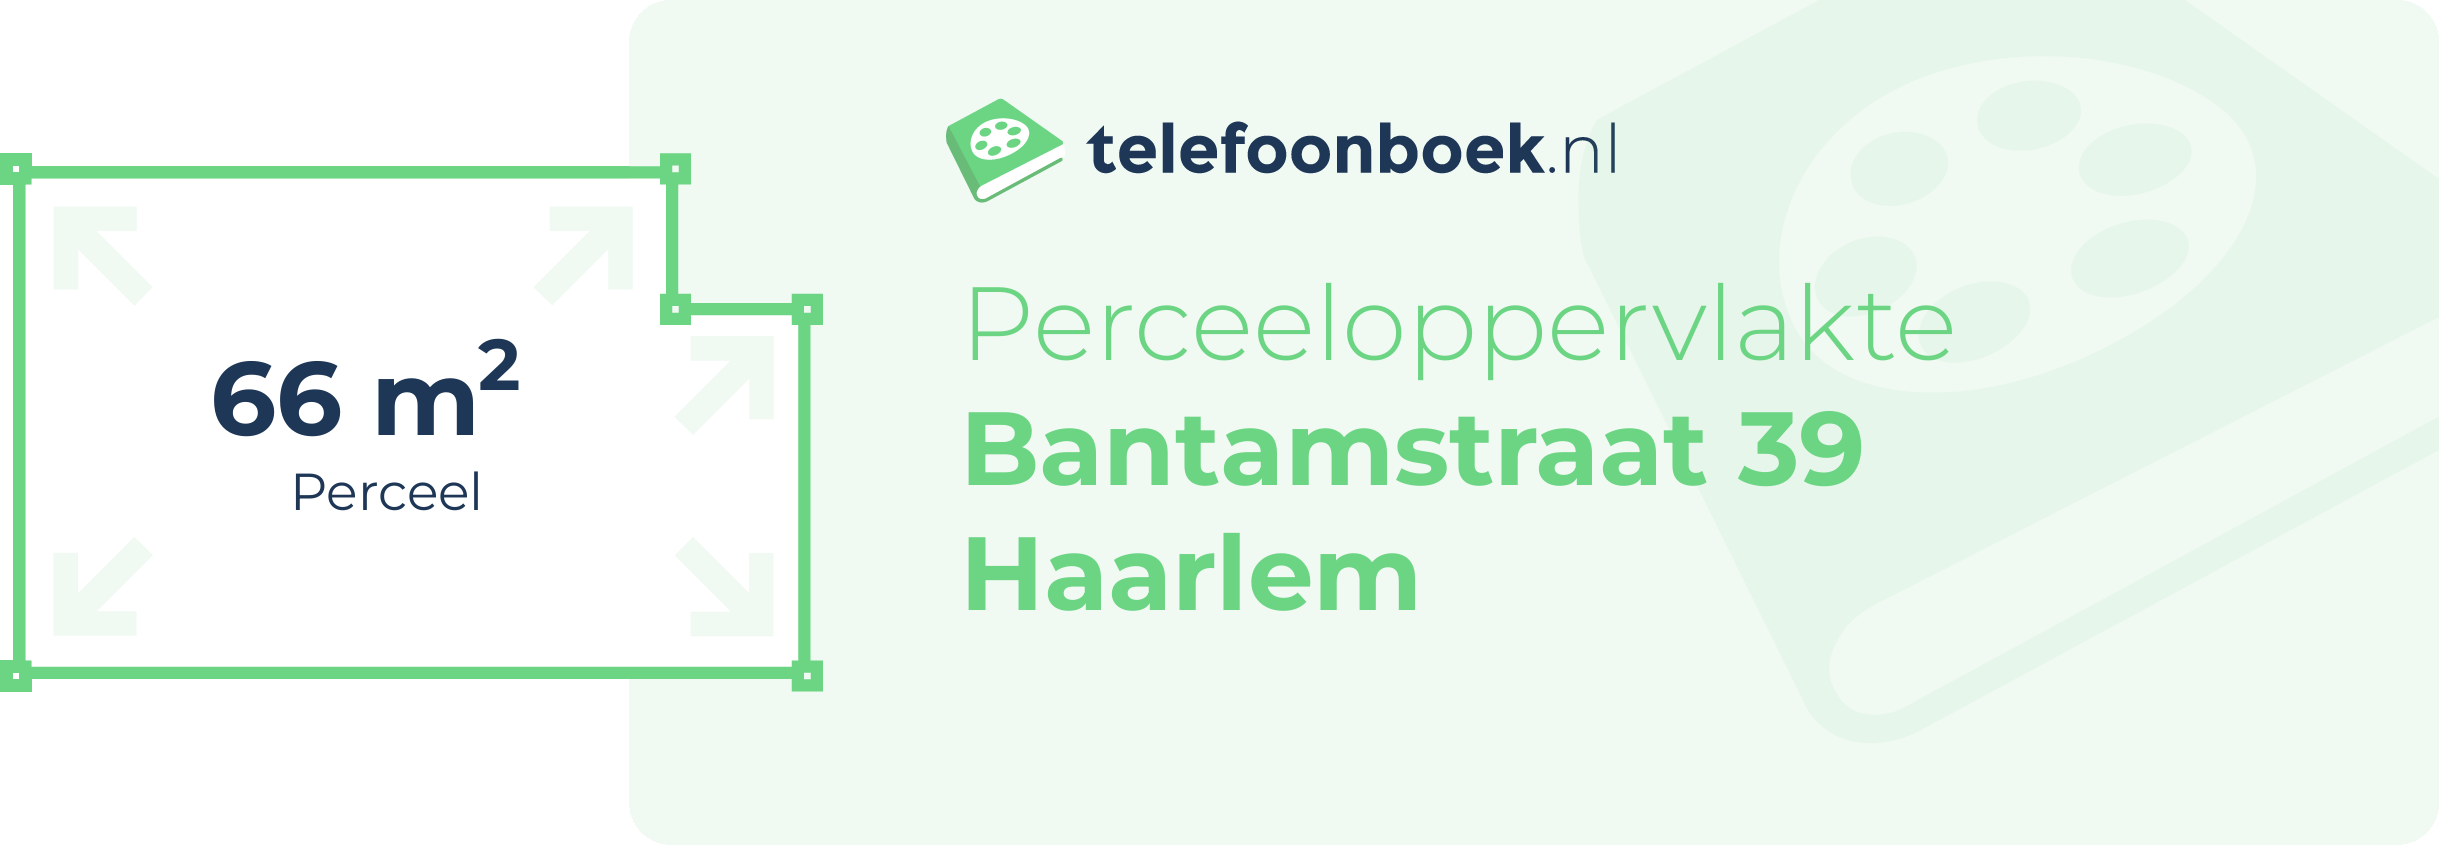 Perceeloppervlakte Bantamstraat 39 Haarlem